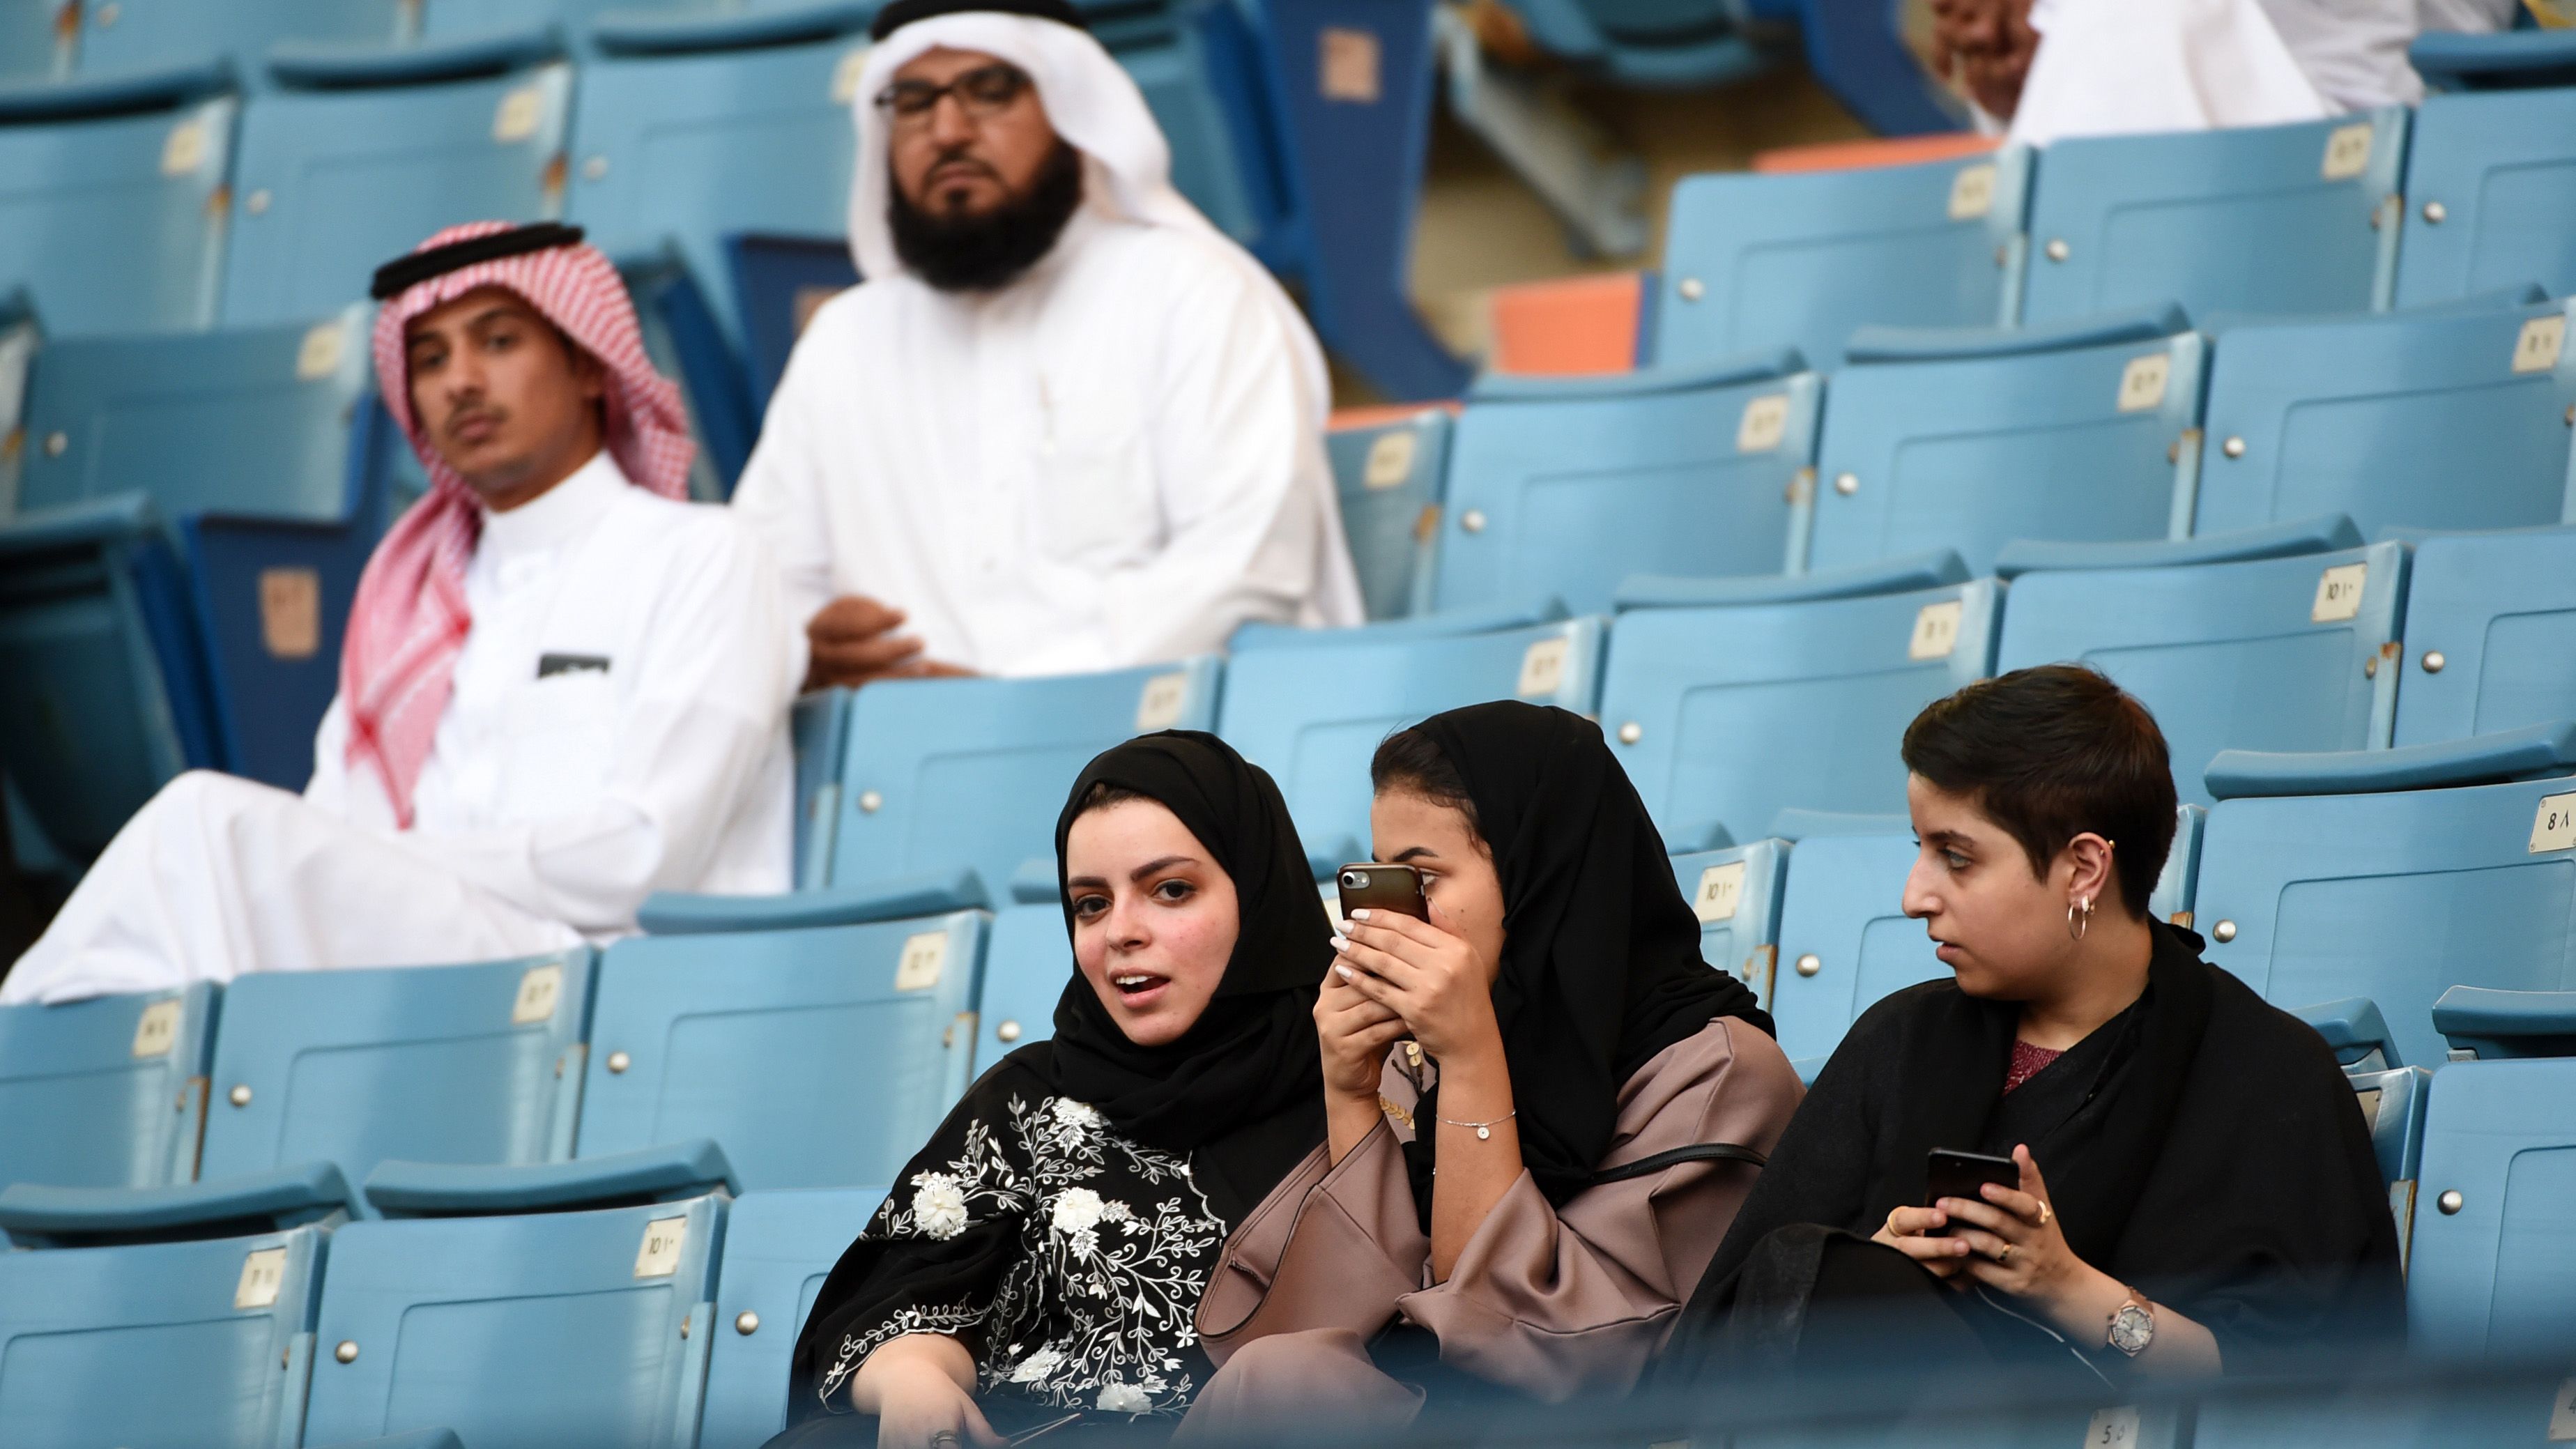 Areabian Muslim Girls Chudai Vid - Saudi Arabia to allow women spectators in sports stadiums | CNN